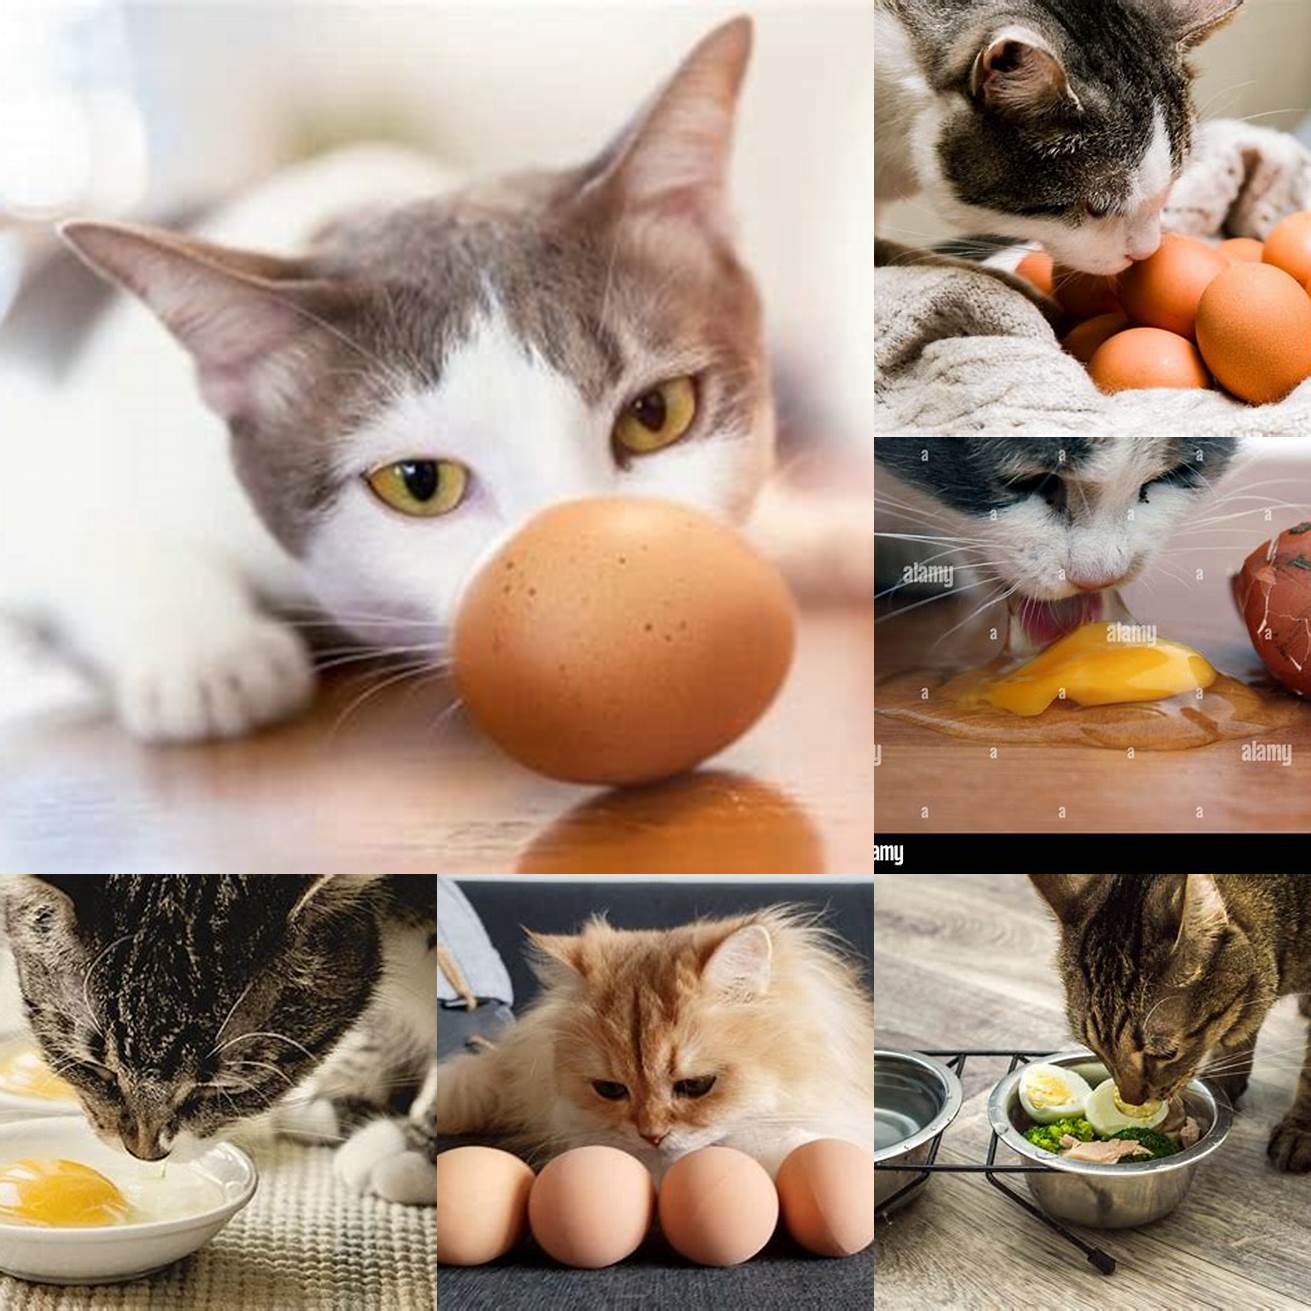 1 A cat eating an egg shell